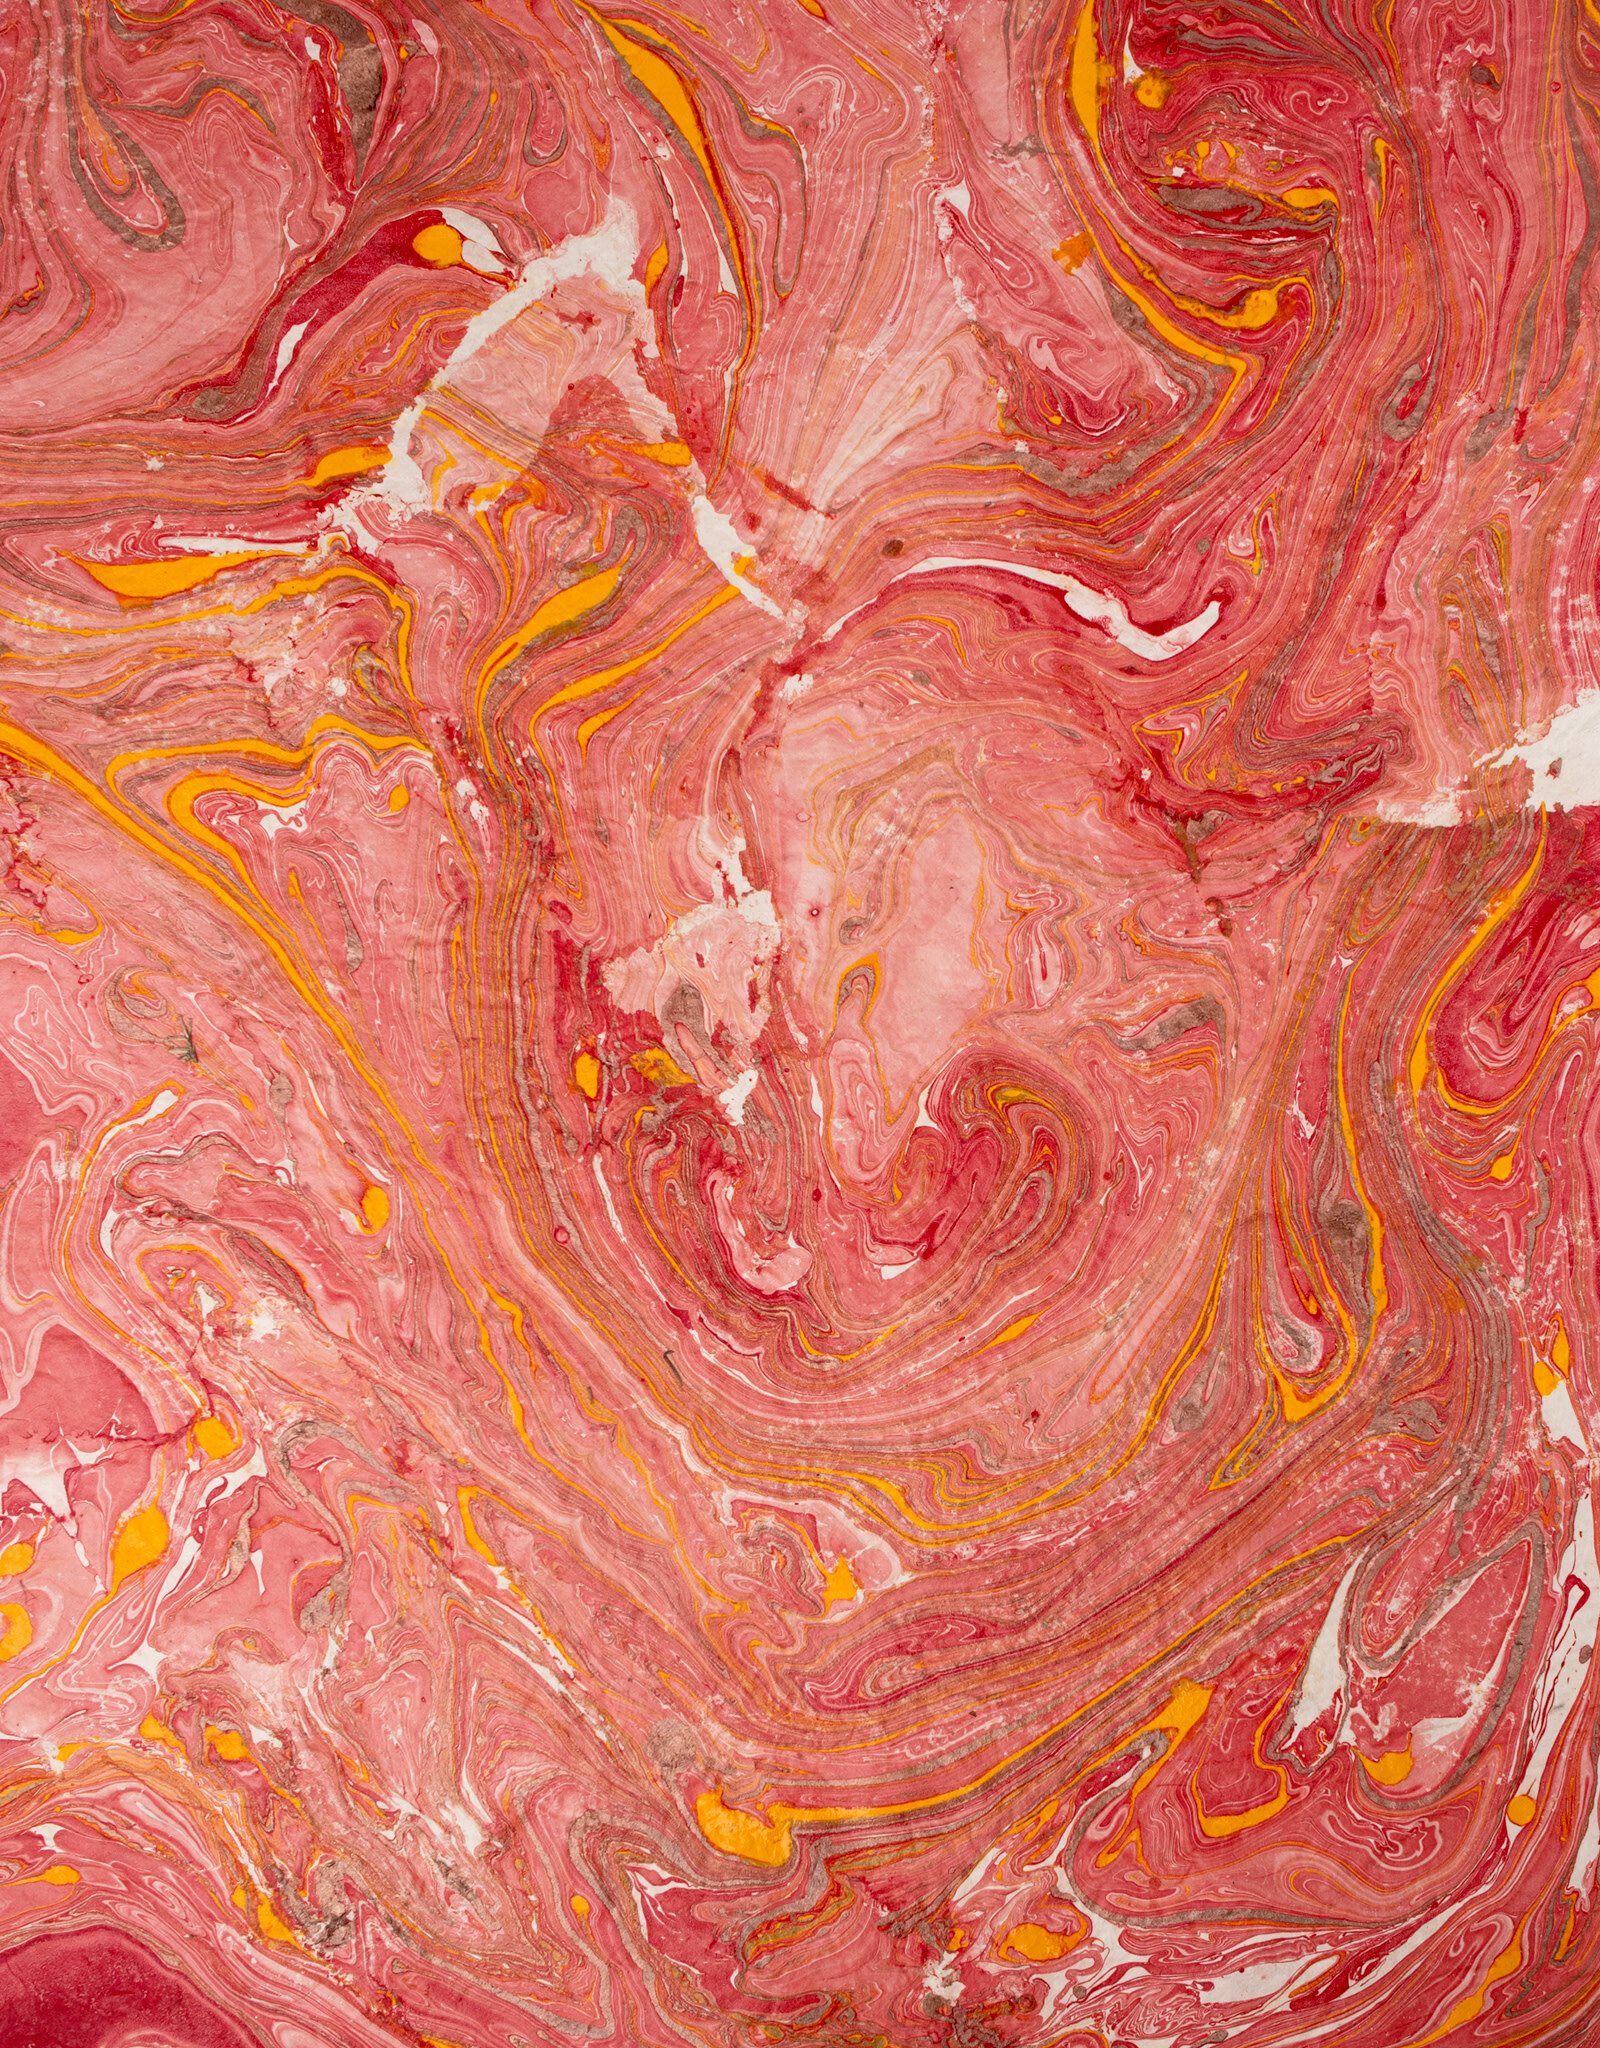 AITOH Aitoh Lokta Marble, Red/Orange/Copper, 19.5" x 29.5"